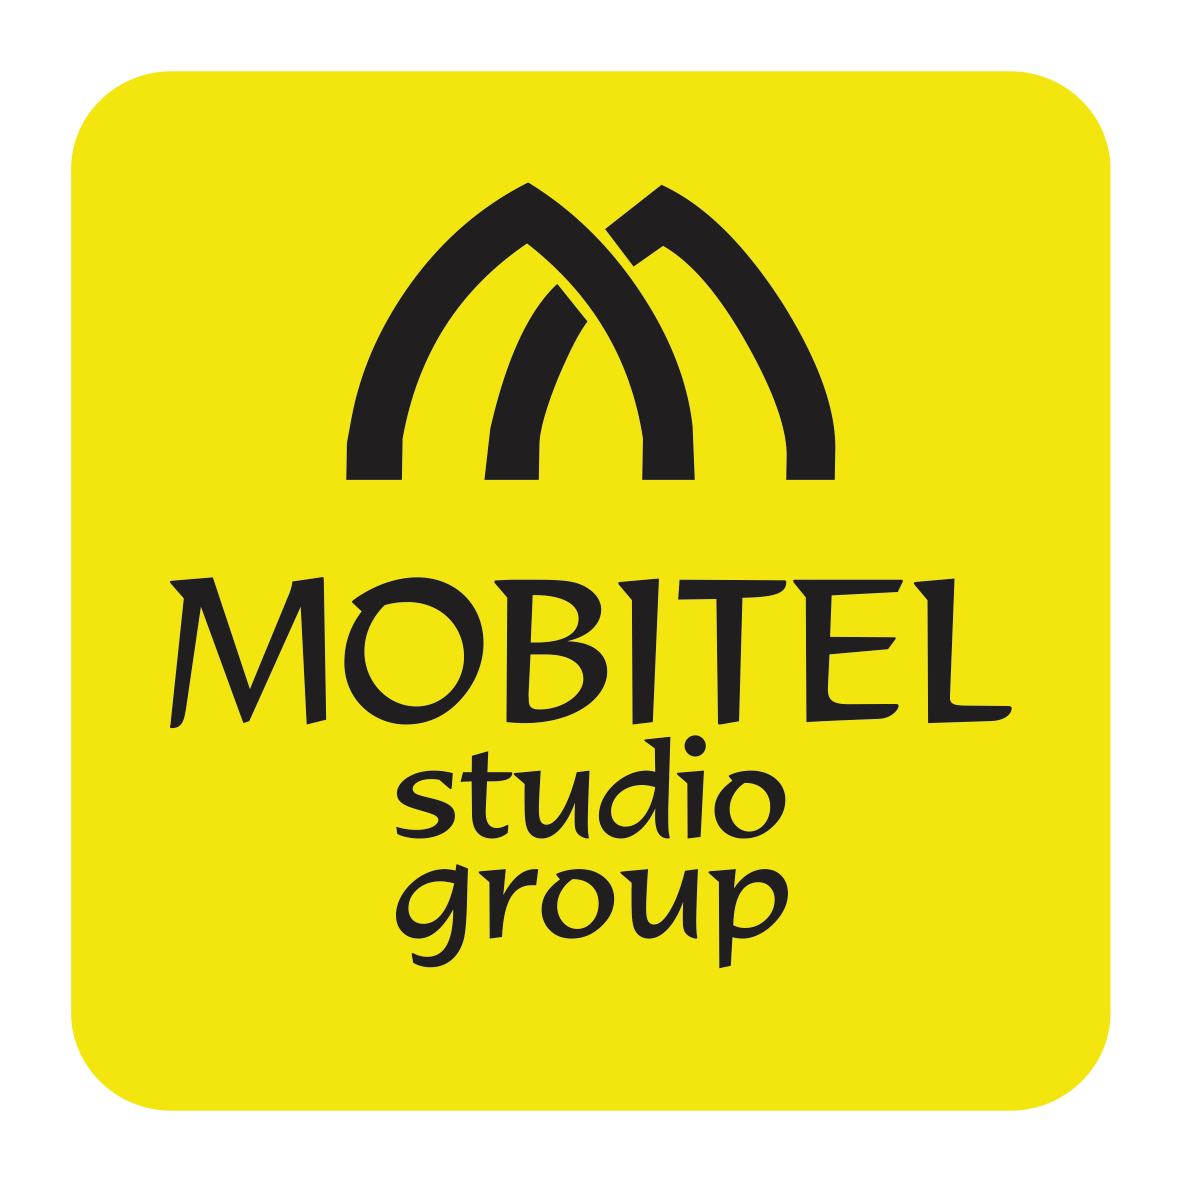 Mobitel studio